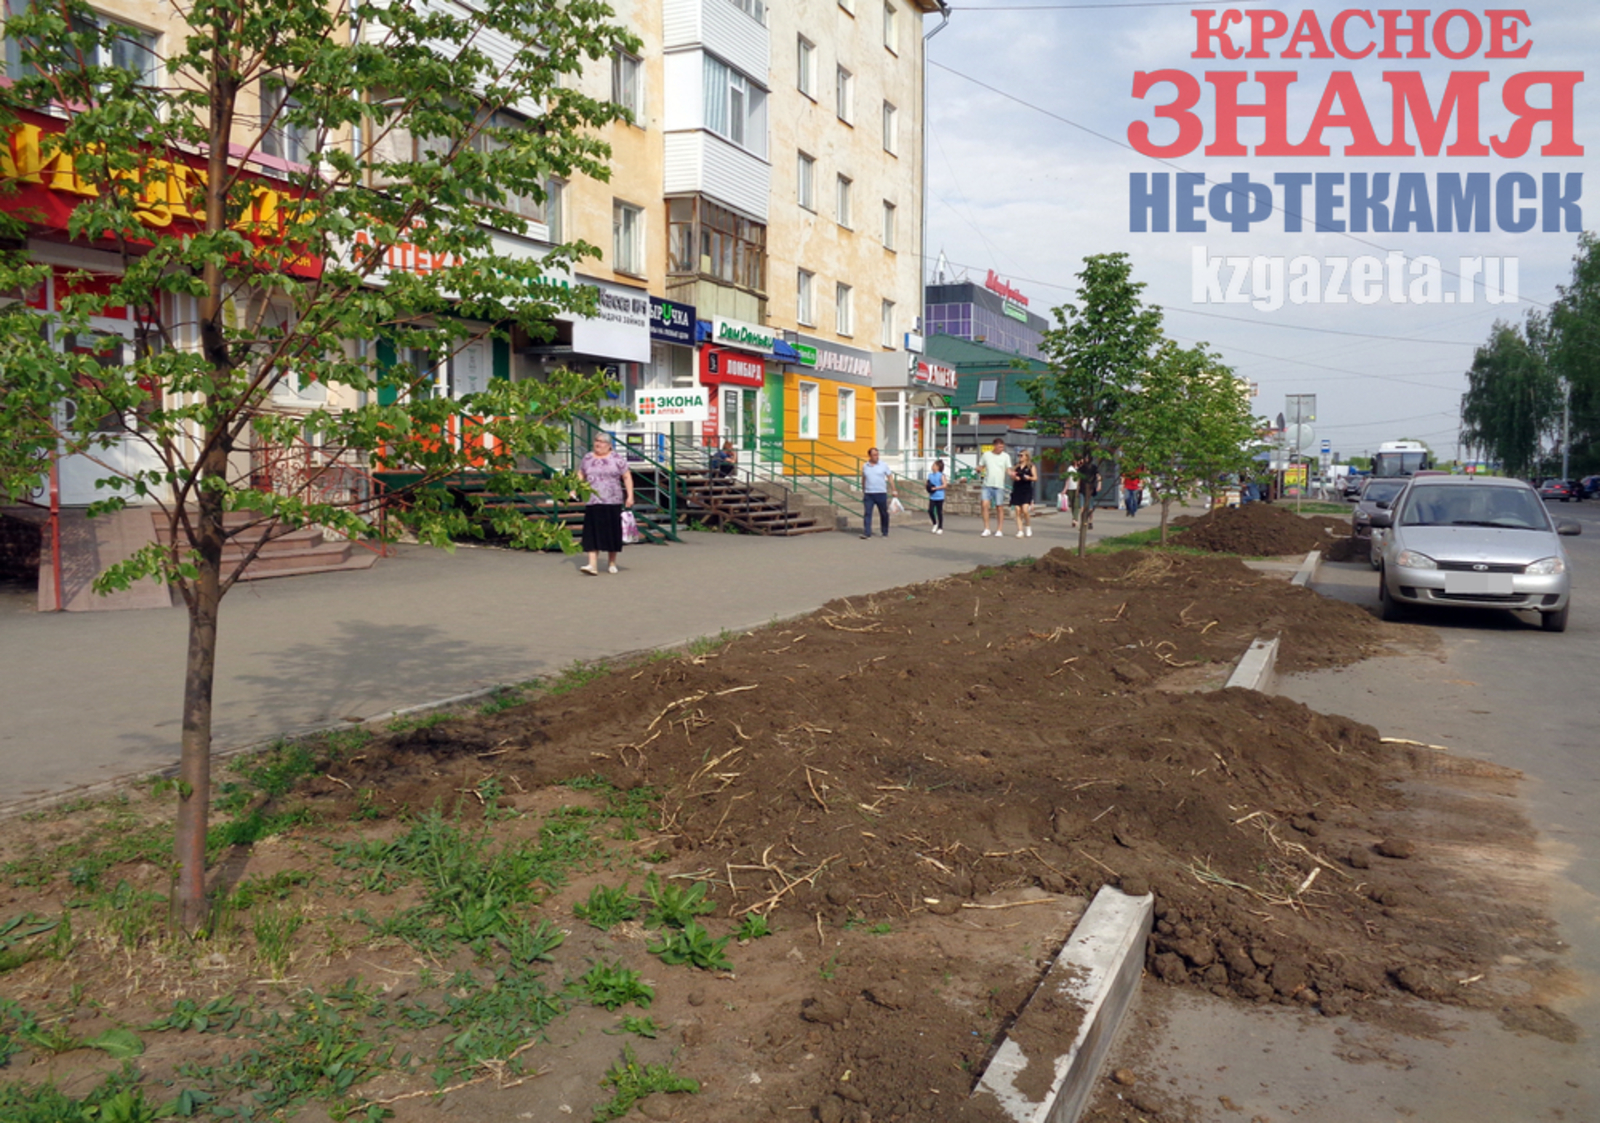 Ремонт газона начали от центрального рынка. Фото: Наиль Фахреев, «КЗ».